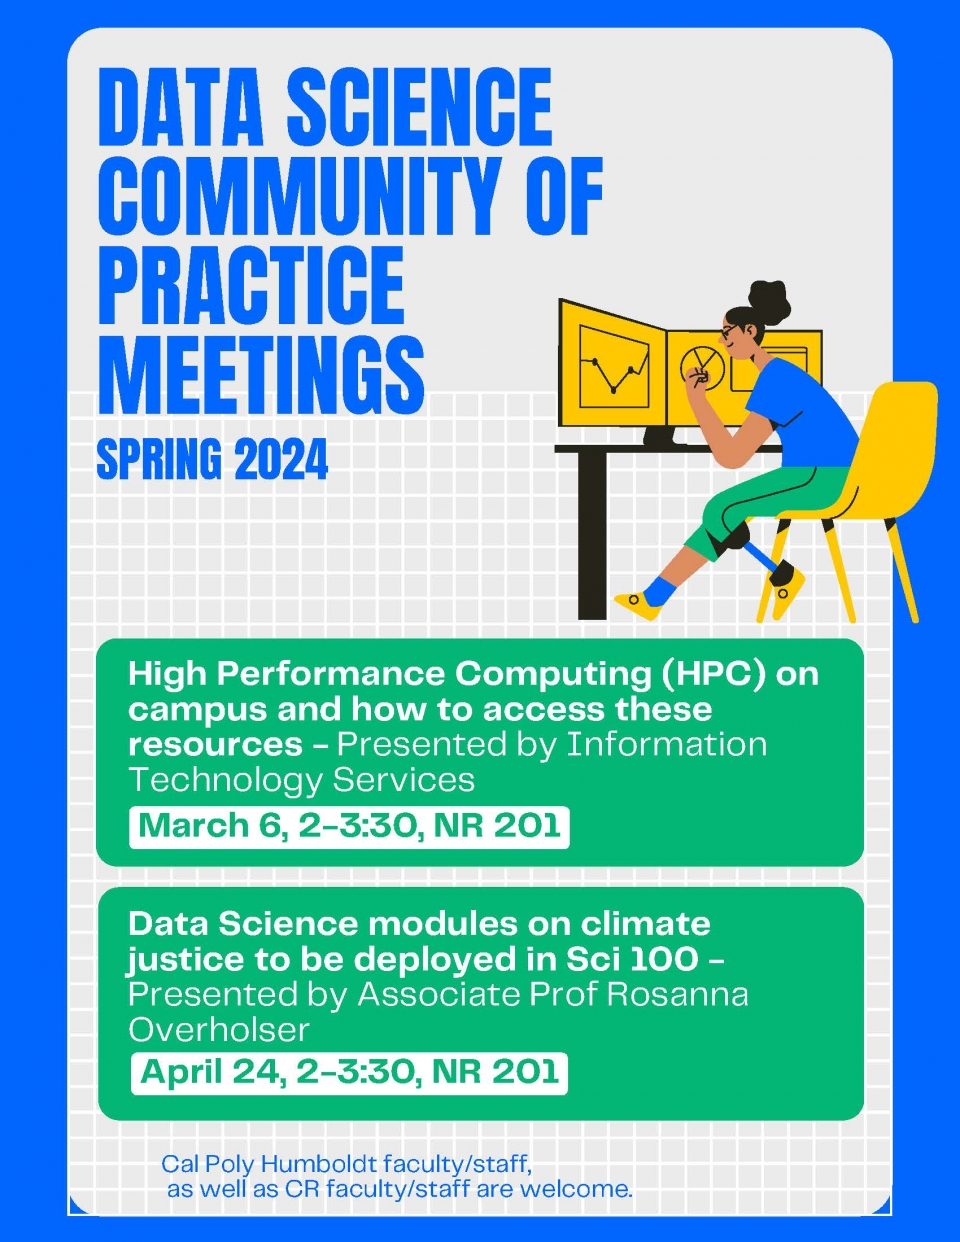 Data Science Community of Practice Meetings